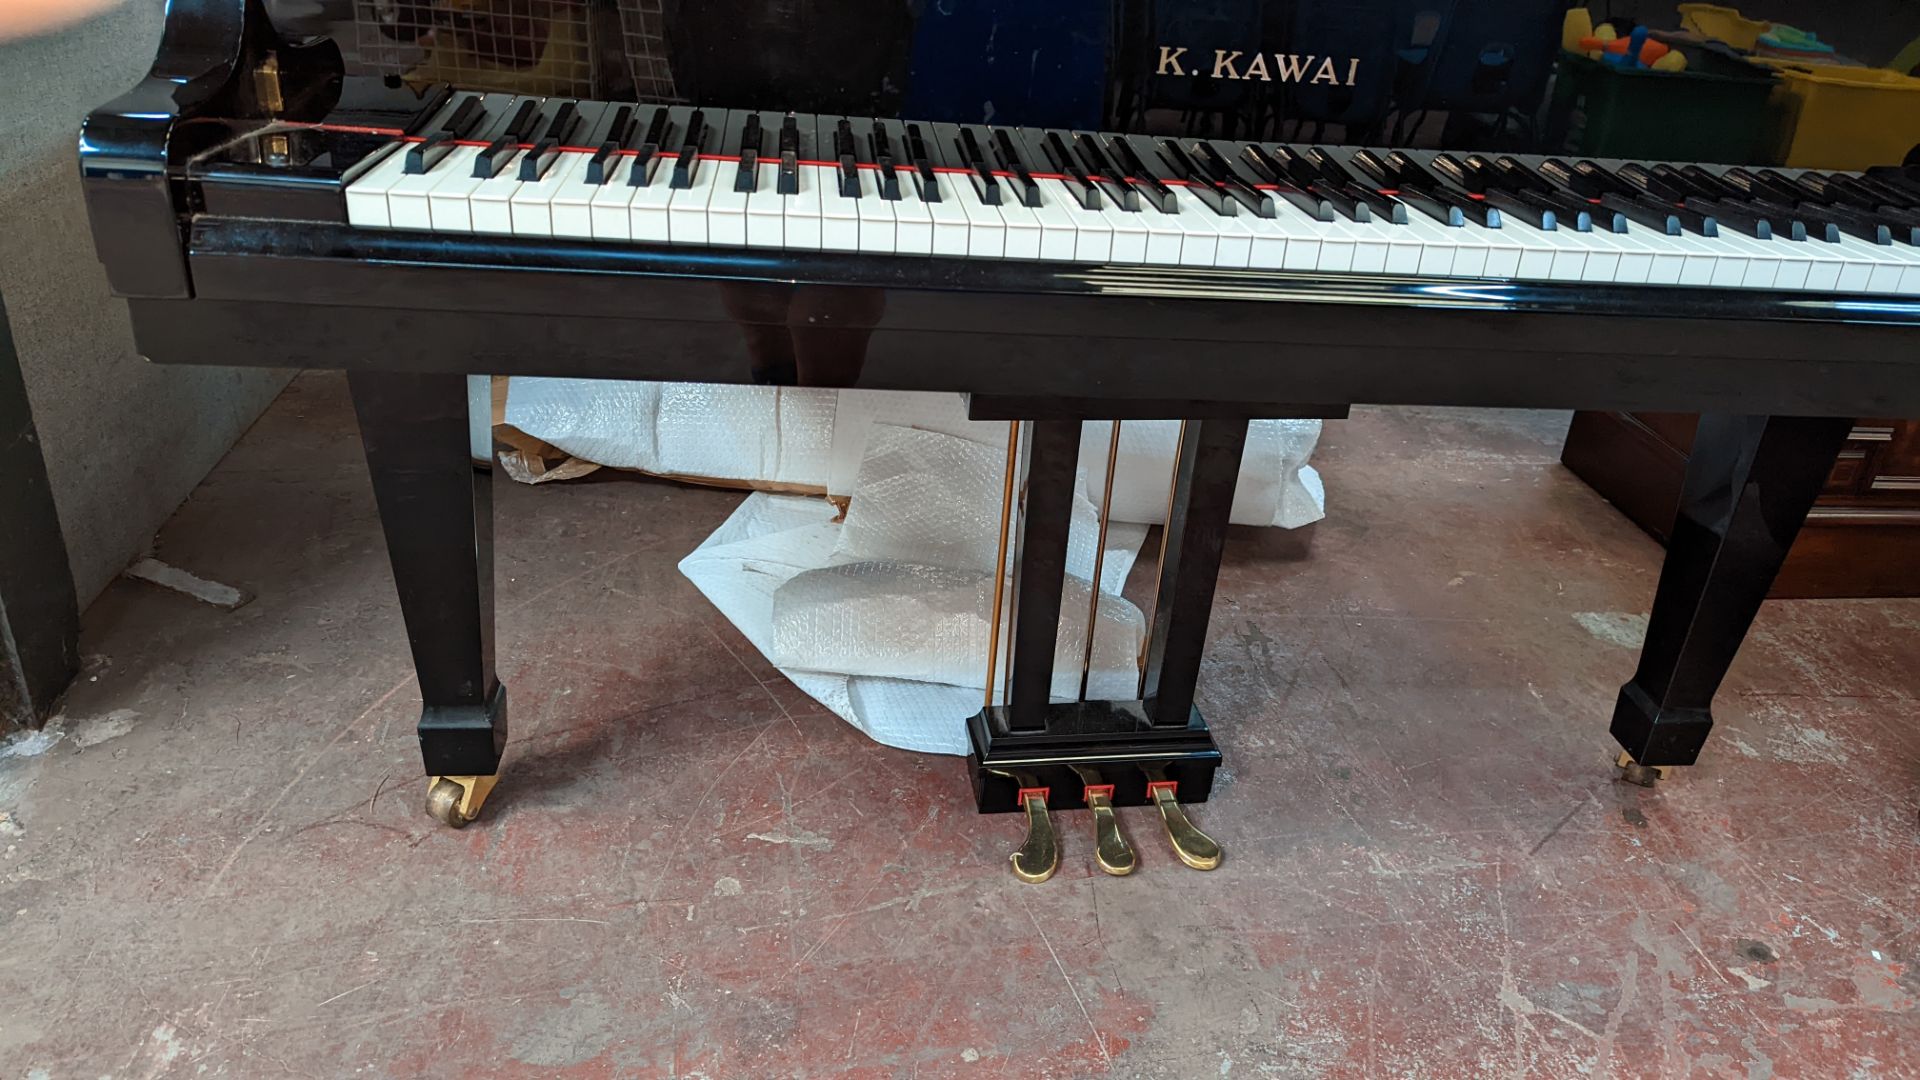 K. Kawai RX-2 grand piano - Image 13 of 16